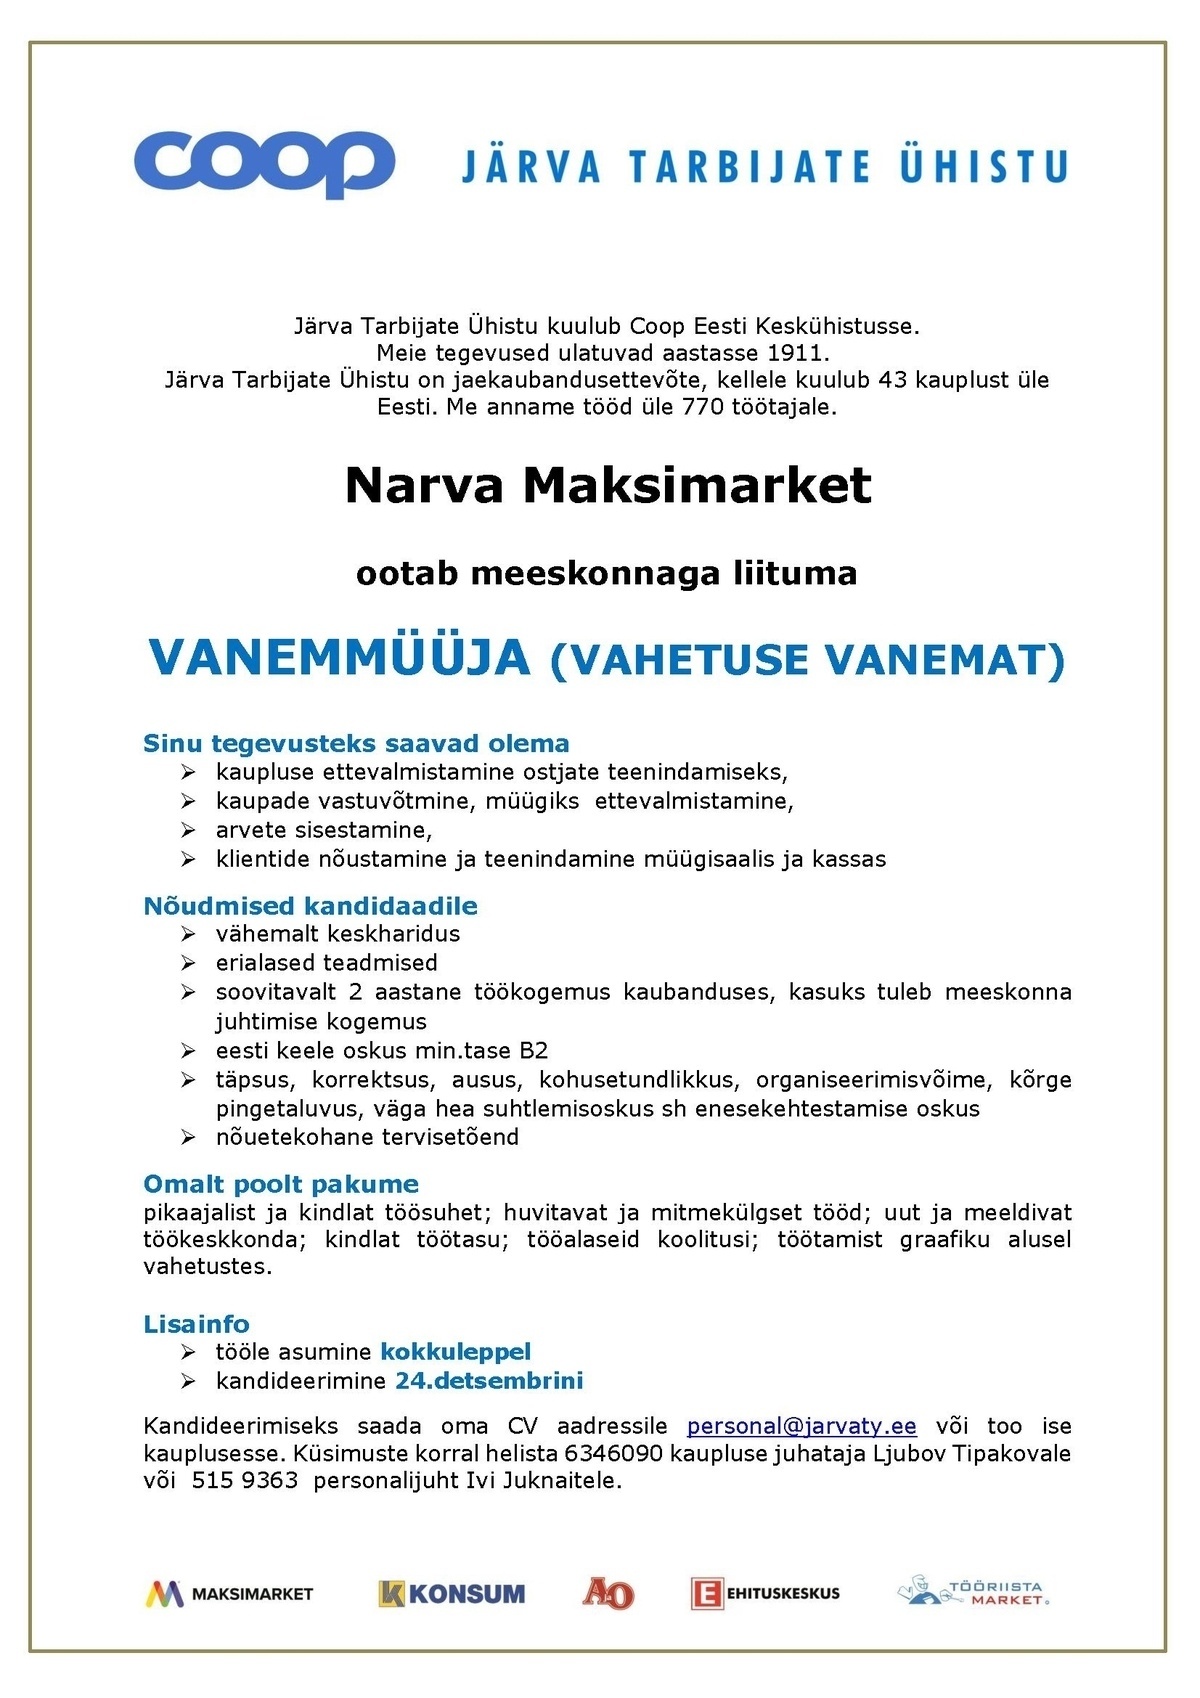 Järva Tarbijate Ühistu VANEMMÜÜJA-vahetusevanem (Narva Maksimarket)